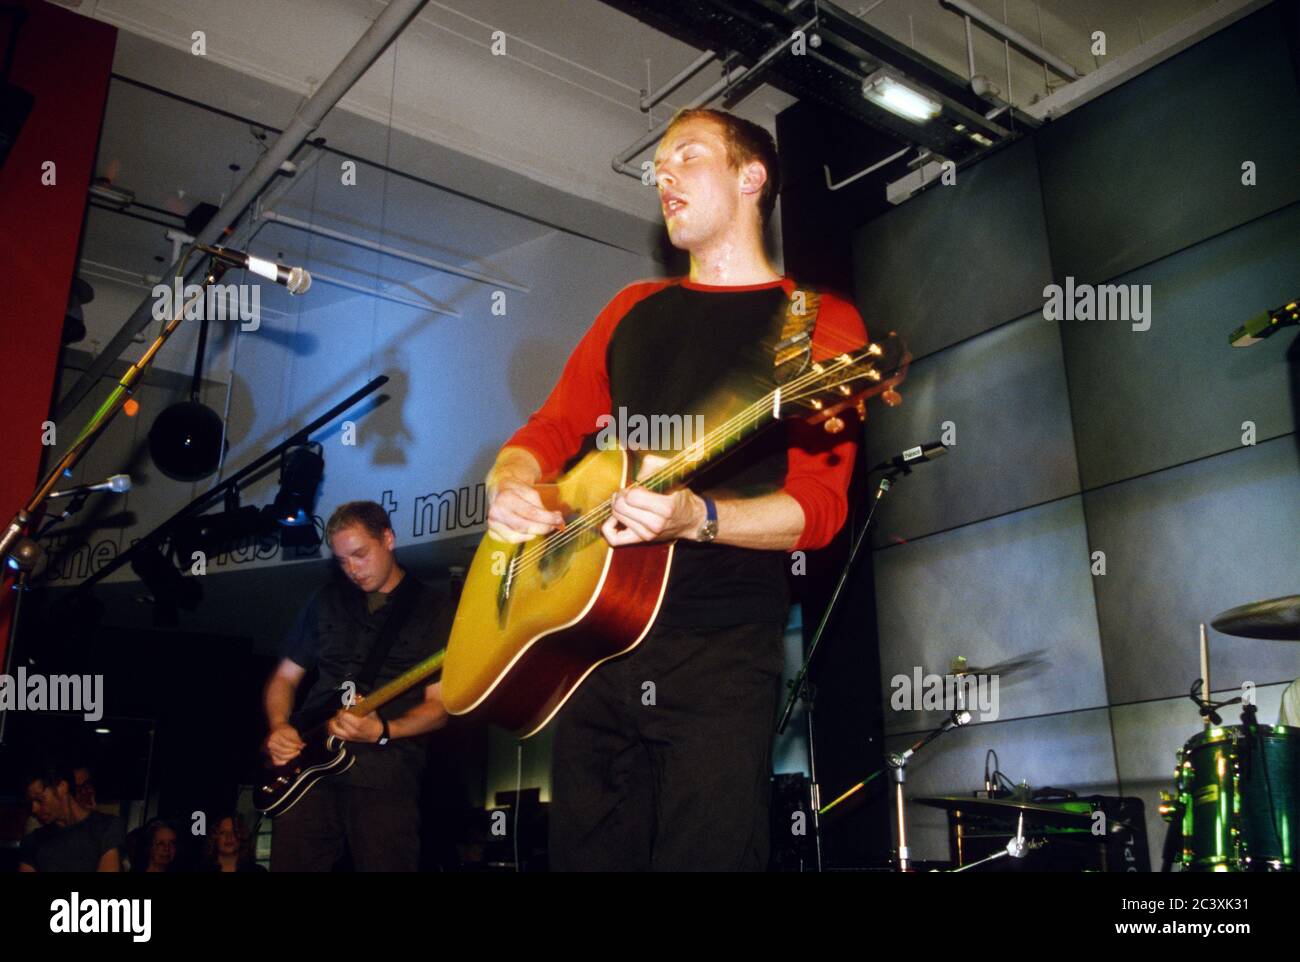 Coldplay spielt HMV-Plattenladen 10. Juli 2000, Oxford Street, London, England, Vereinigtes Königreich. Stockfoto